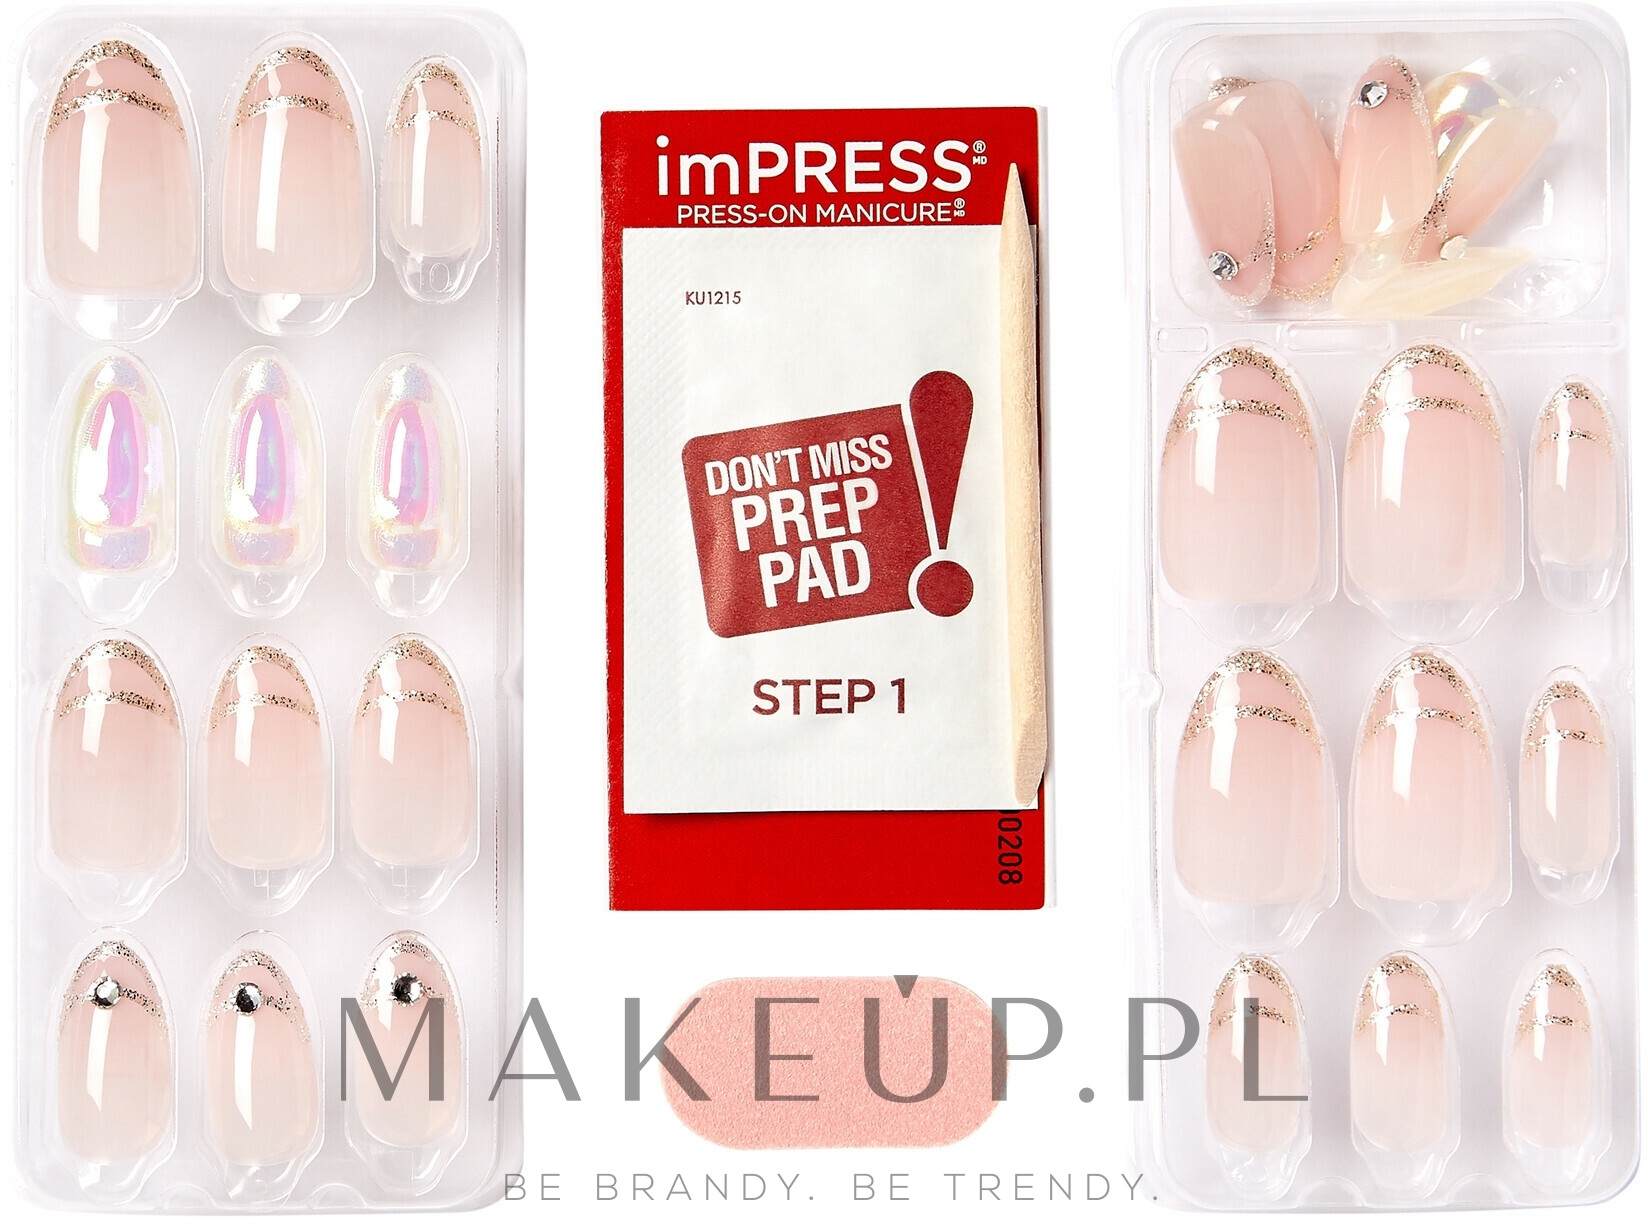 Zestaw sztucznych paznokci z klejem, średniej długości - Kiss imPRESS Premium Press-On Manicure — Zdjęcie All My Love